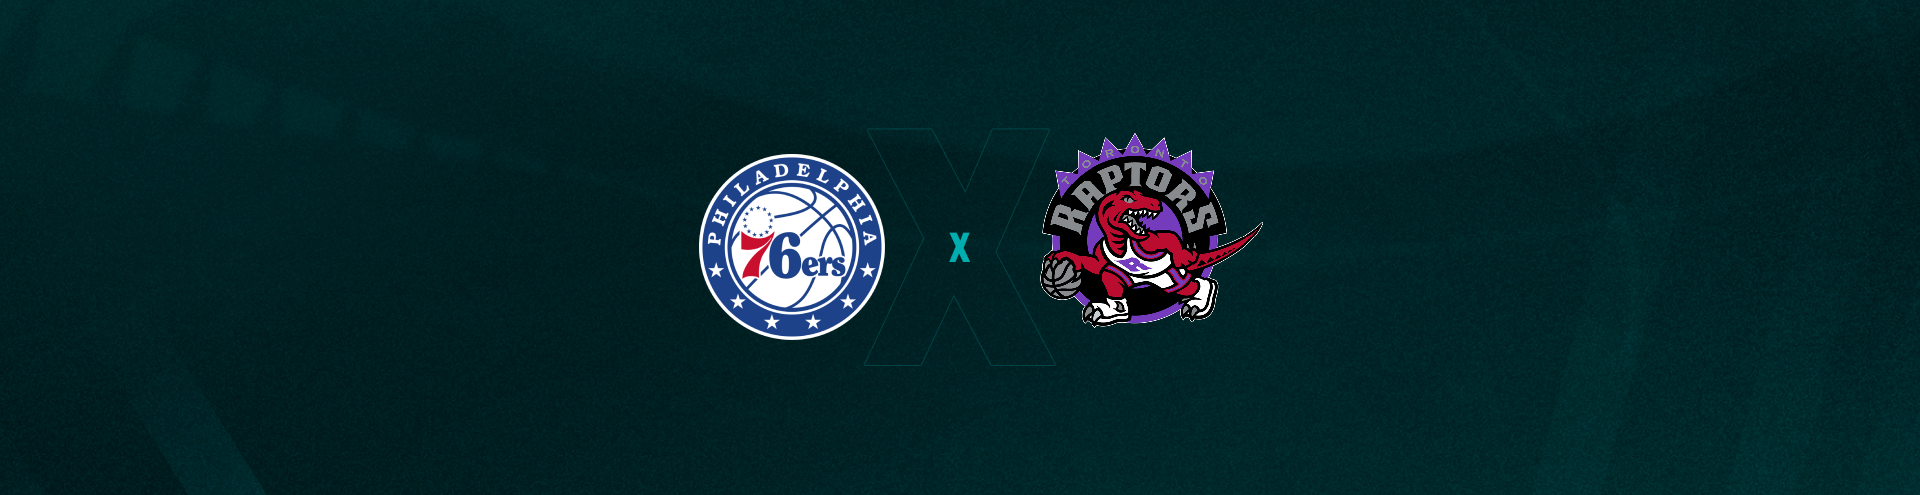 Philadelphia 76ers x Toronto Raptors – Dica, palpite e prognóstico – 16/04  - Quinto Quarto